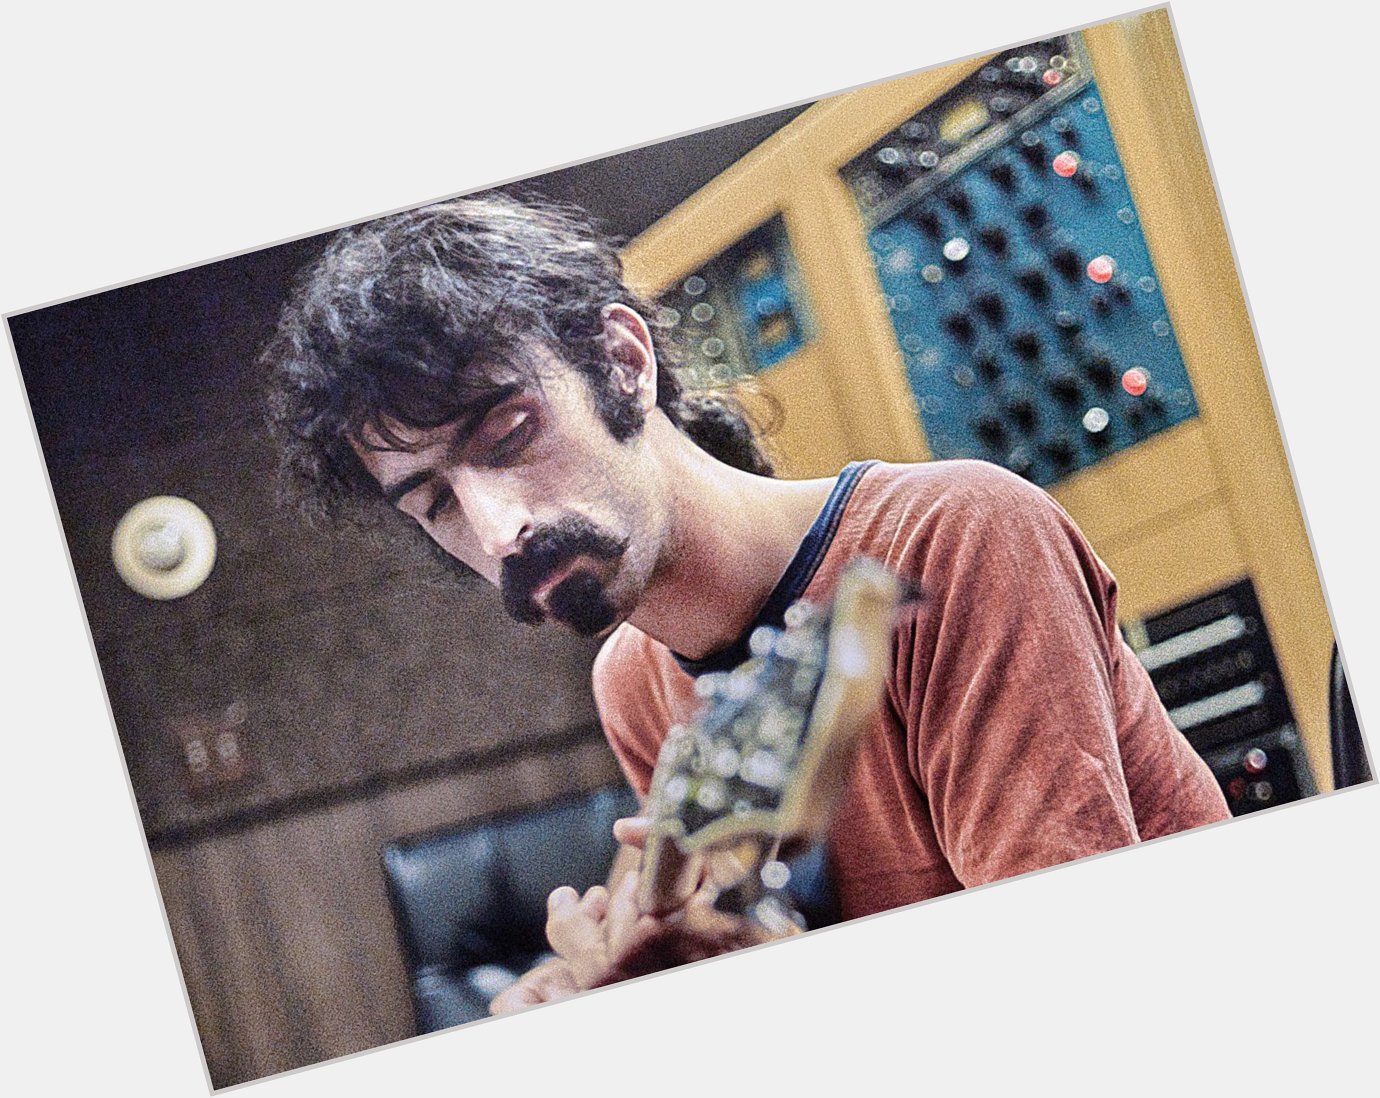 Happy birthday, Frank Zappa! 